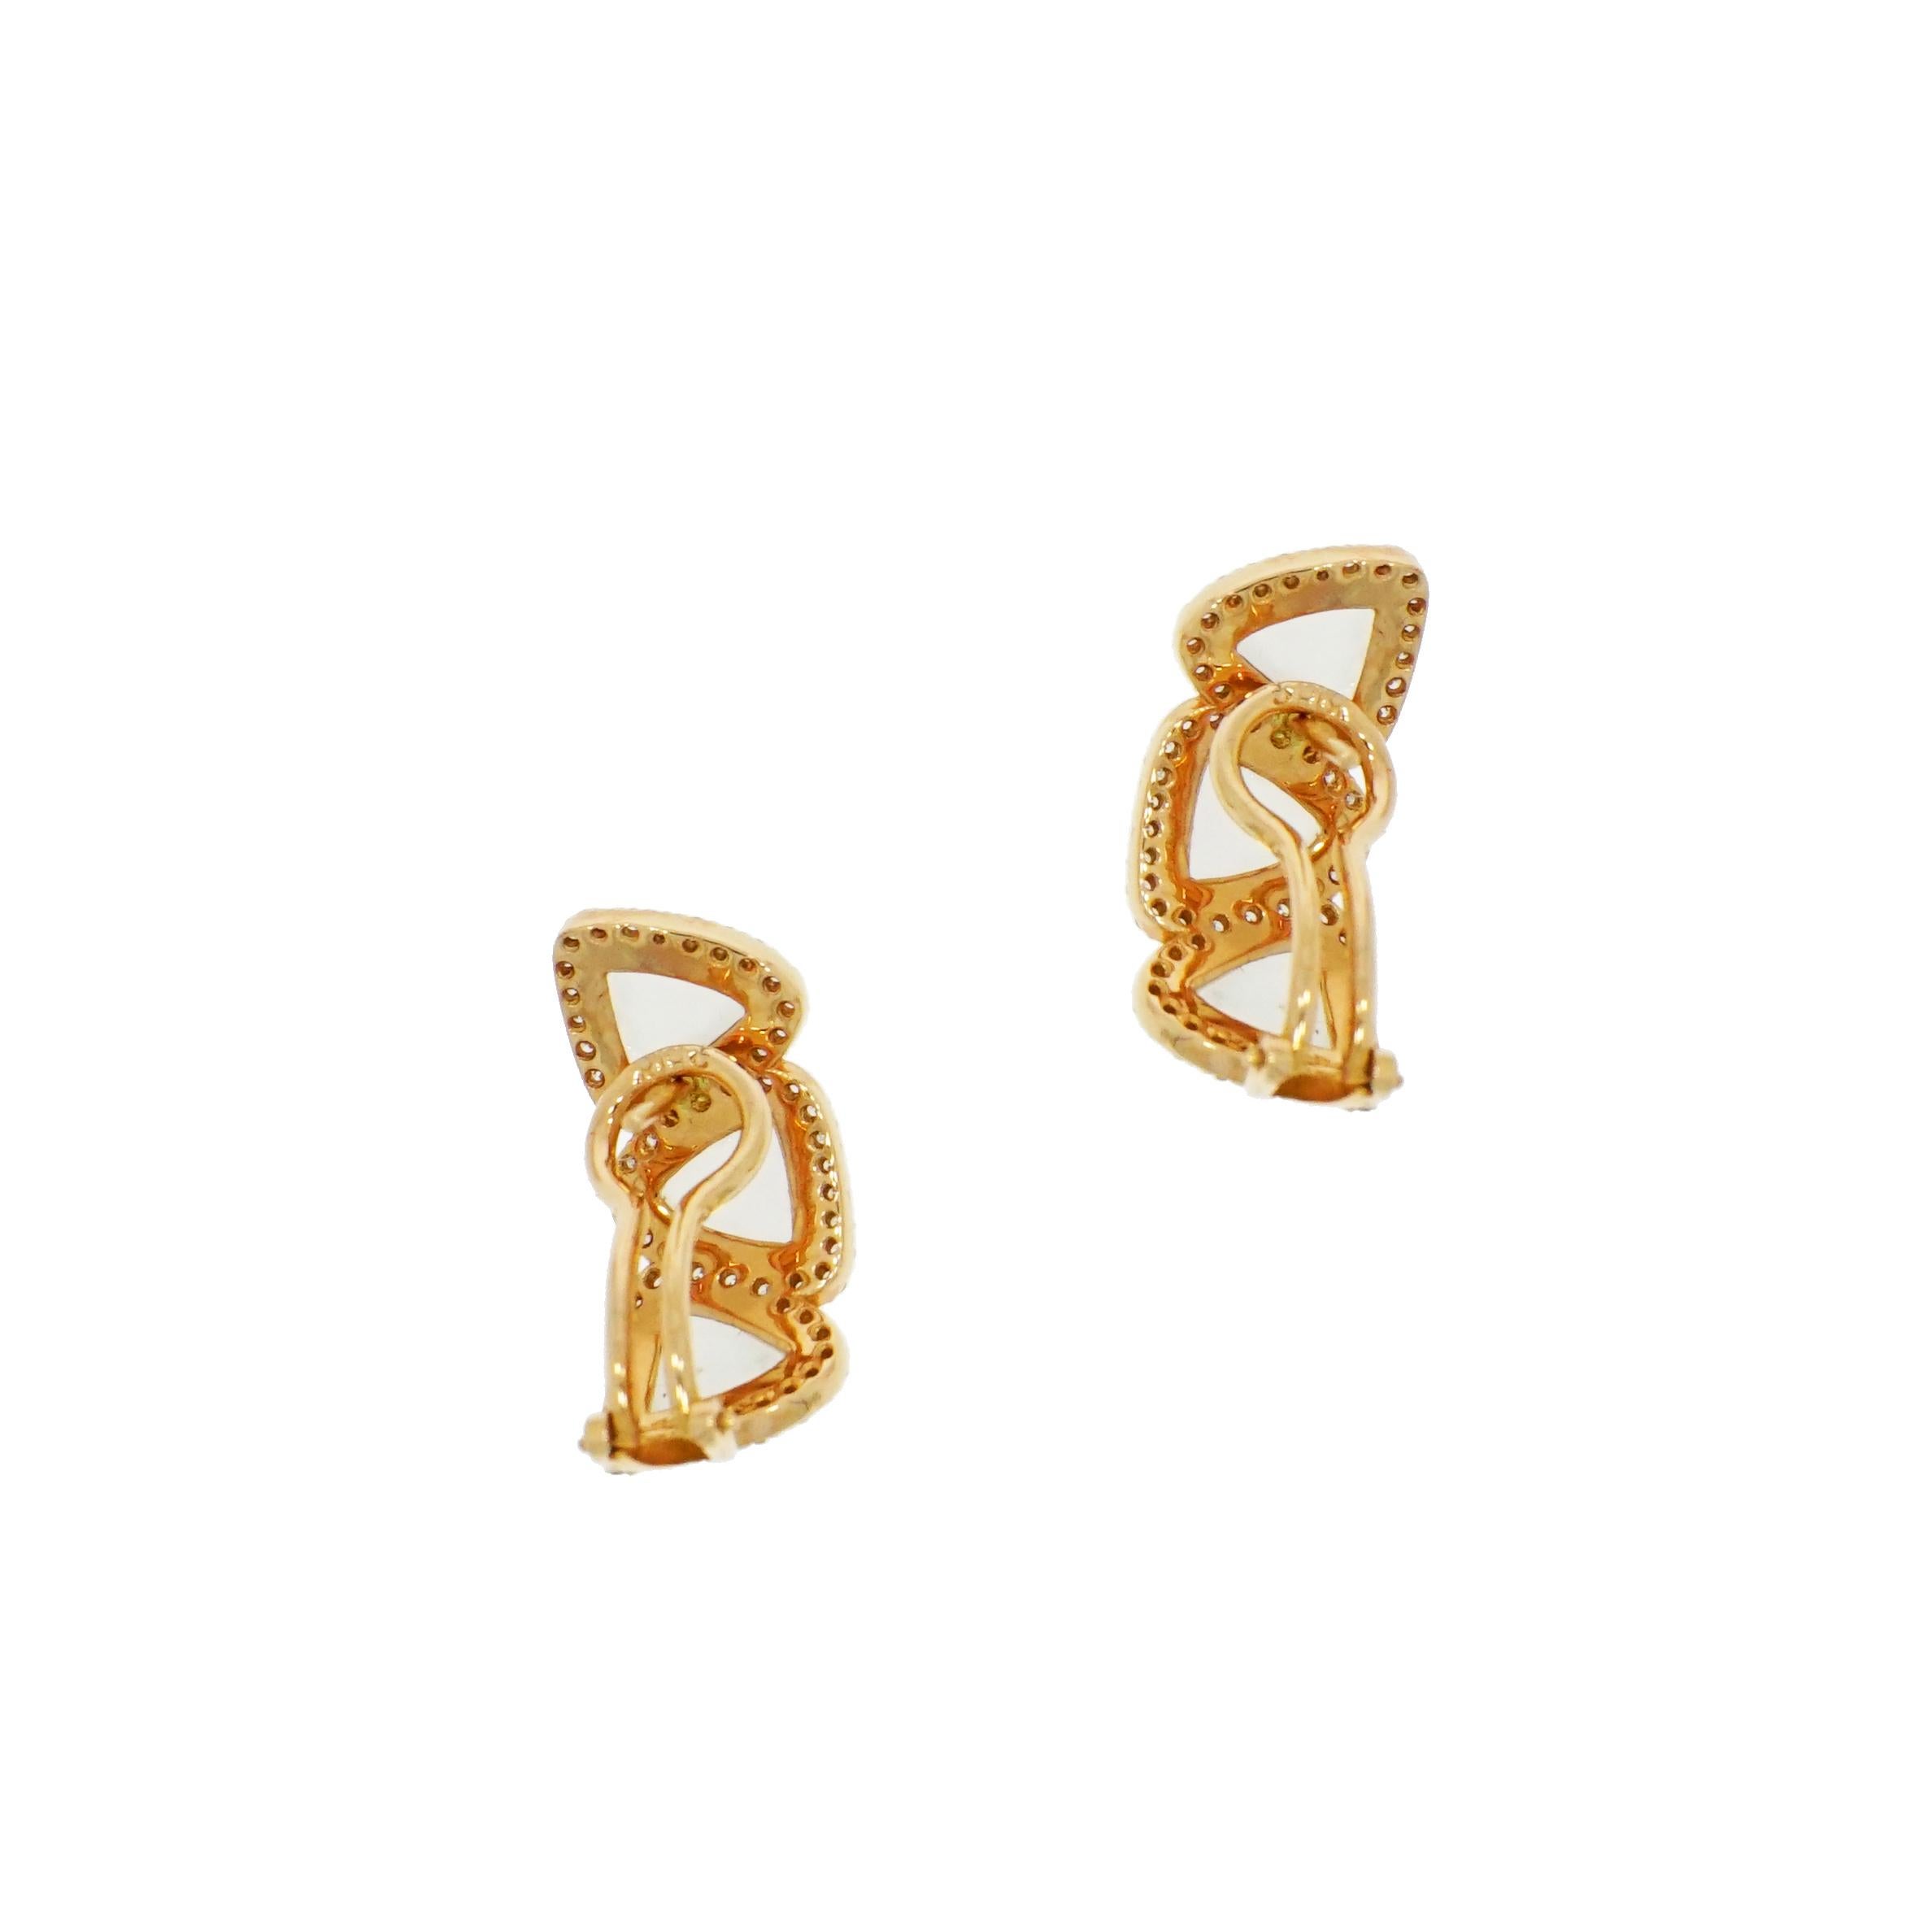 Artist Rose Gold Quartz and Diamond Earrings